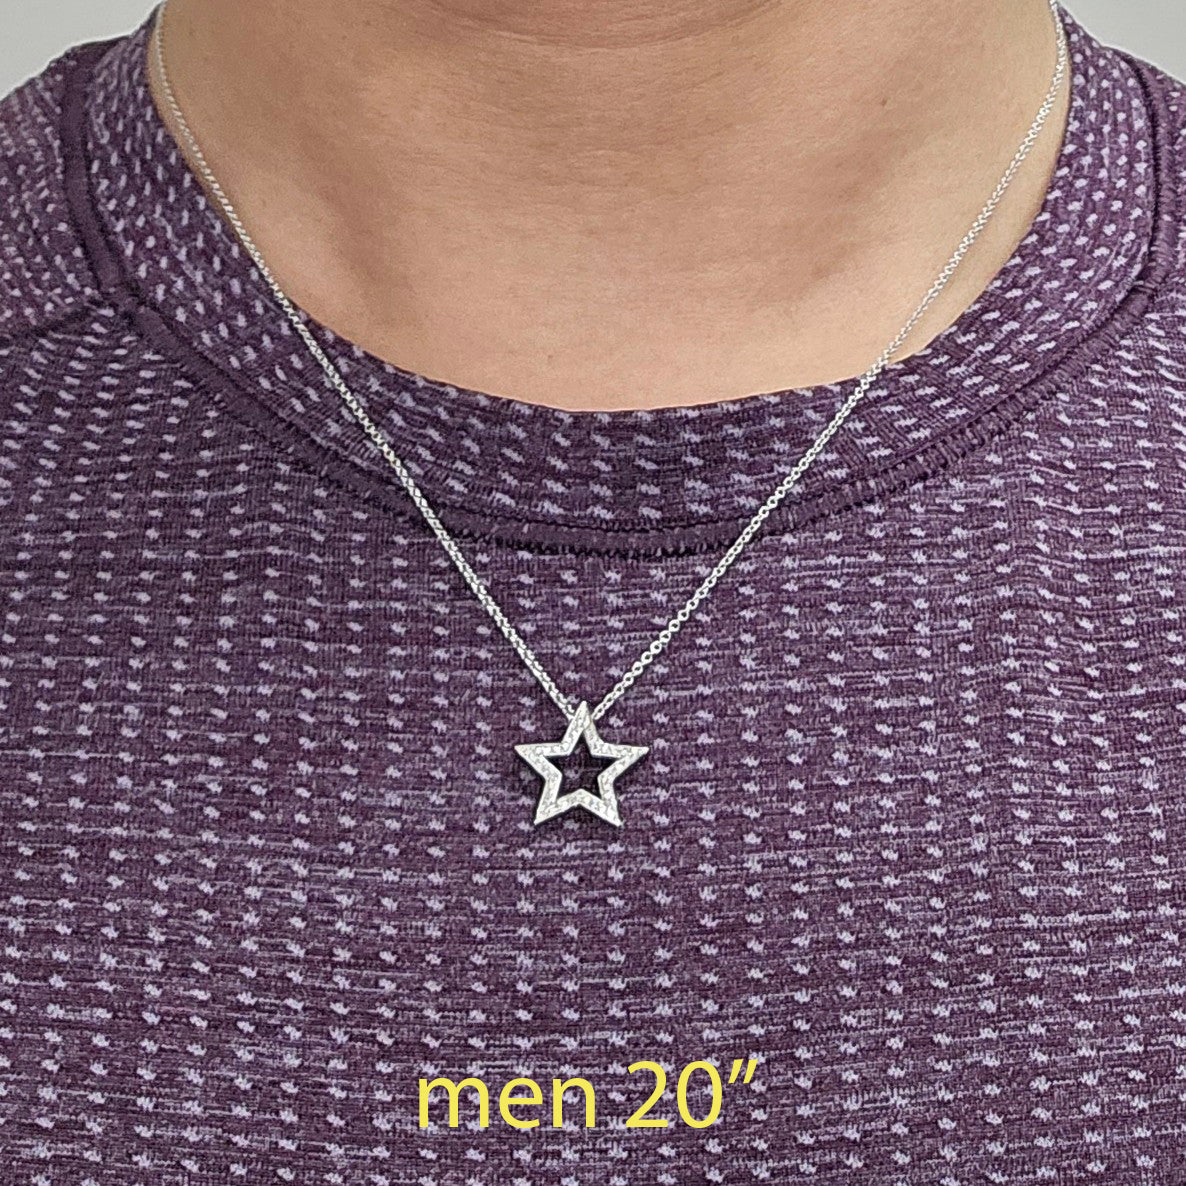 Diamond Necklace/Round Diamond Star Pendant/Natural Brilliant Cut Diamond Necklace/14K Gold Diamond Necklace